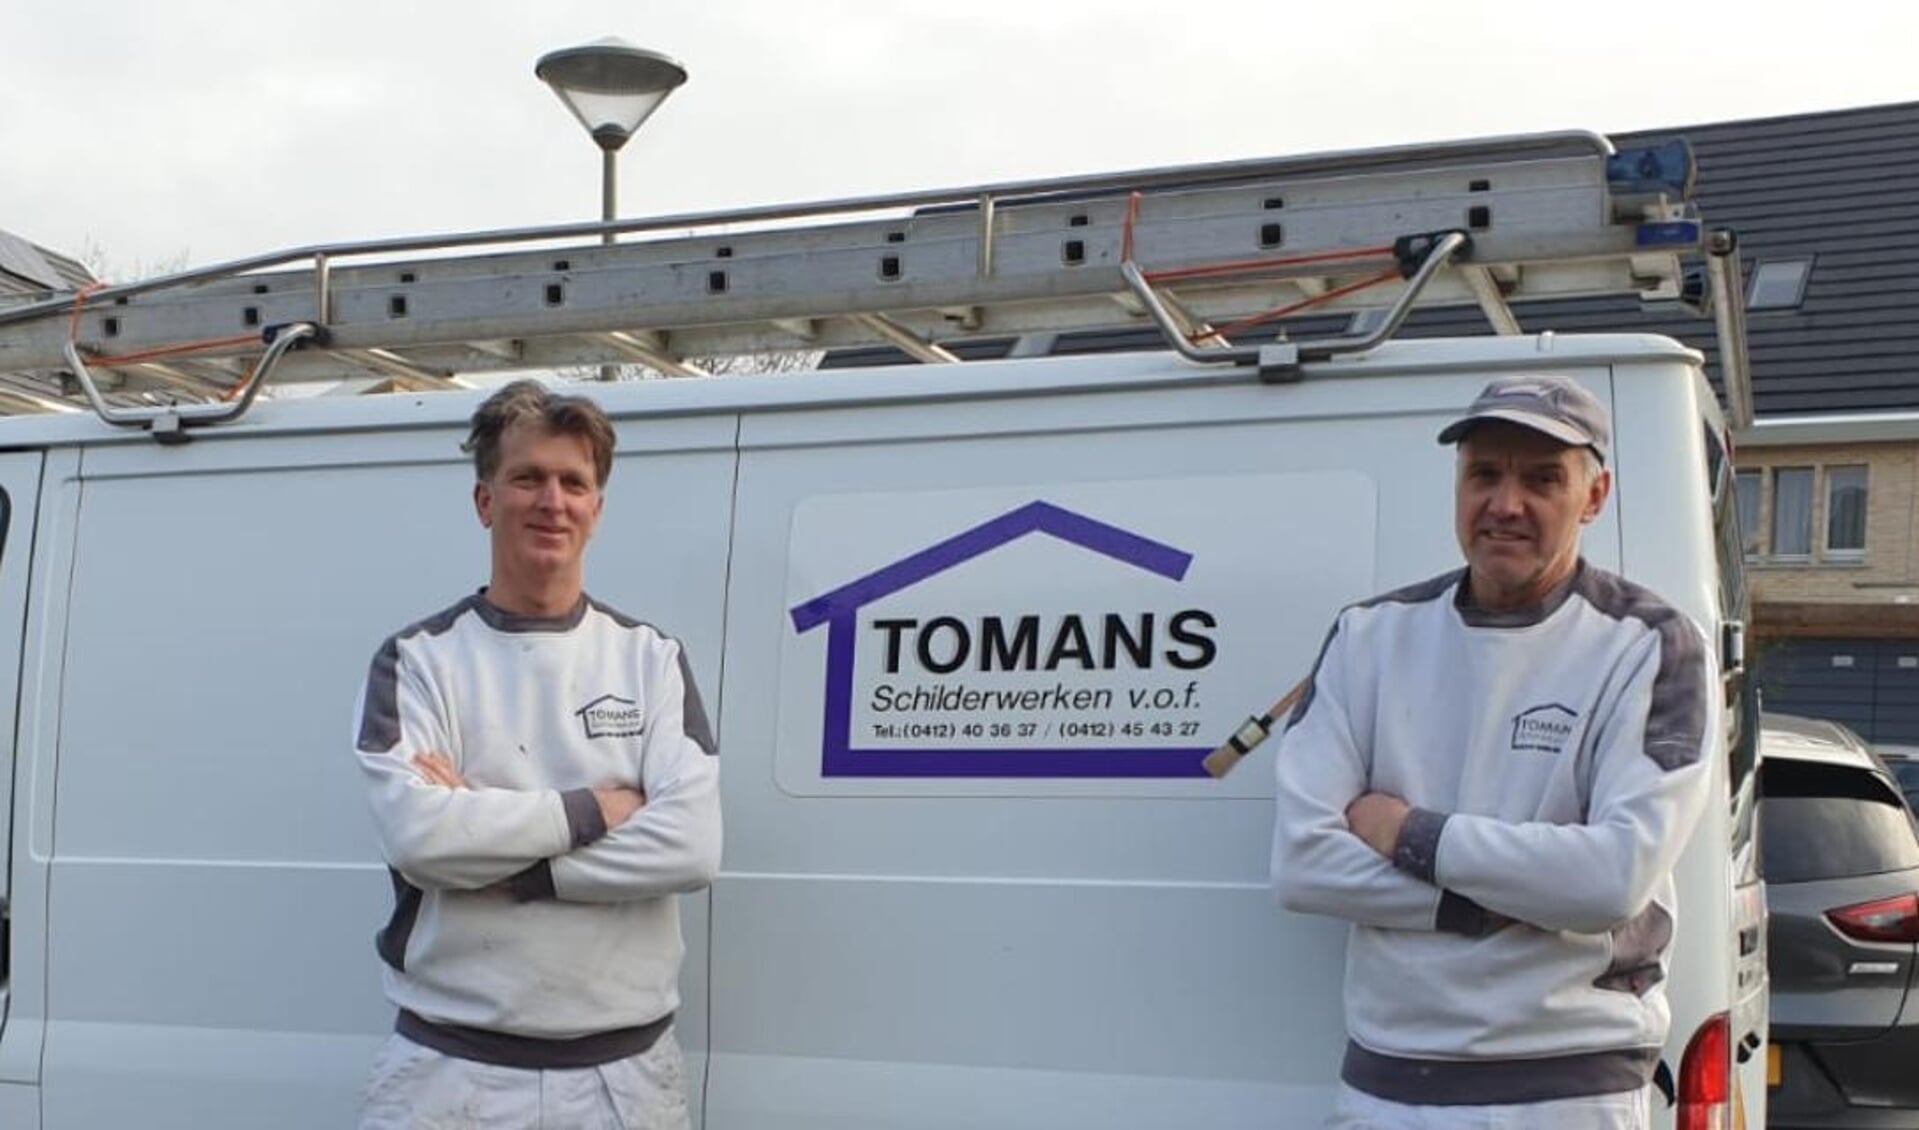 Tommy van de Vondervoort en Frans Hoeks van Tomans Schilderwerken.